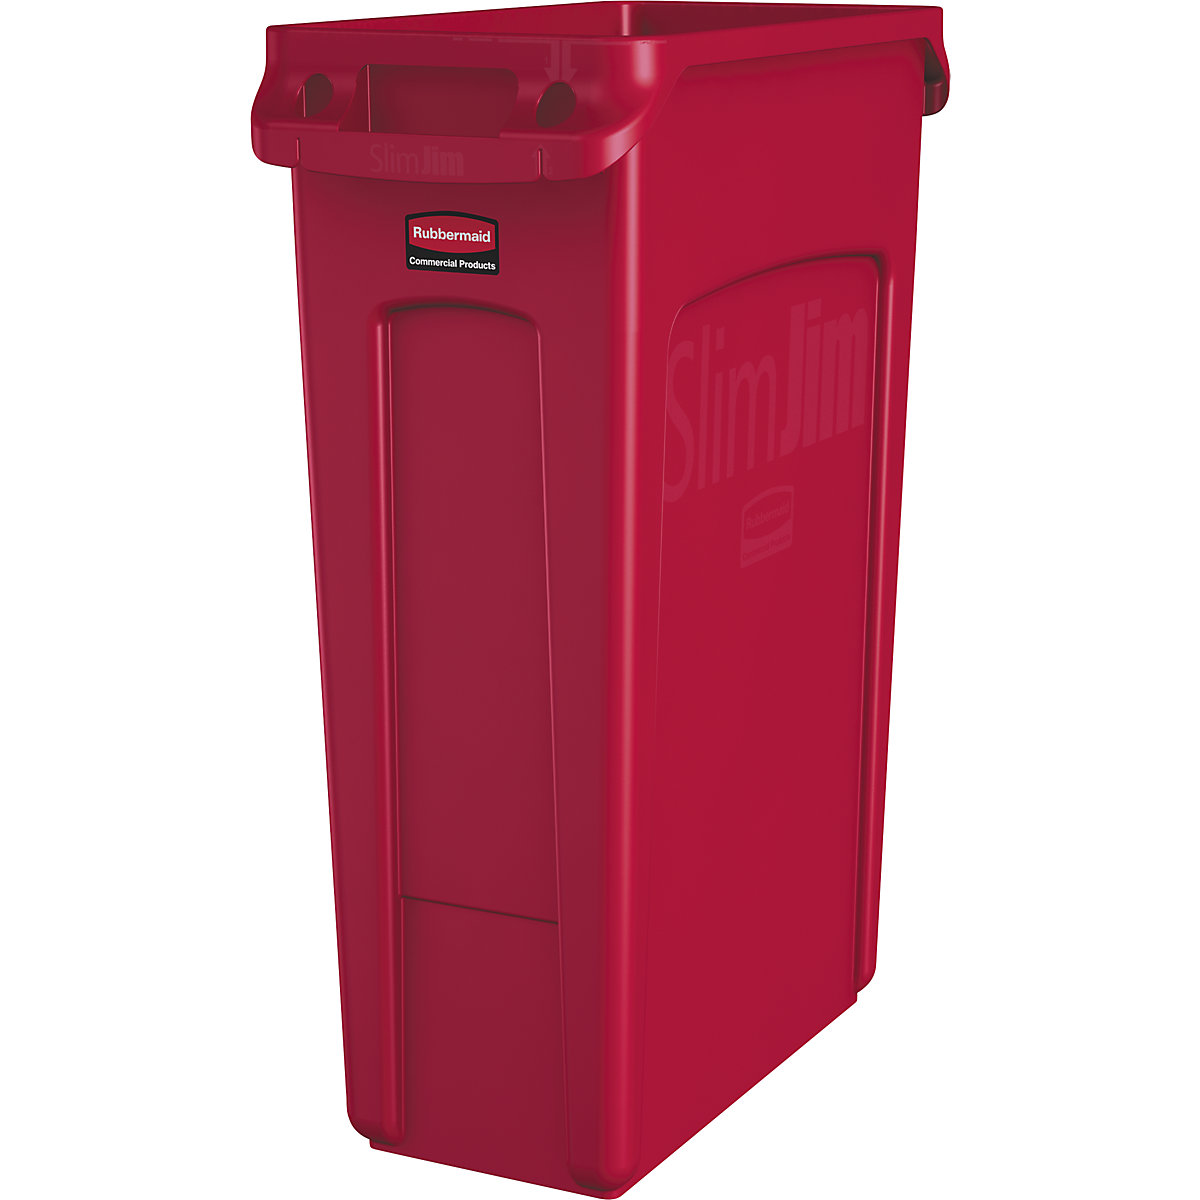 Contenitore per la raccolta differenziata/cestino per rifiuti SLIM JIM® – Rubbermaid, capacità 87 l, con canali di aerazione, rosso-11